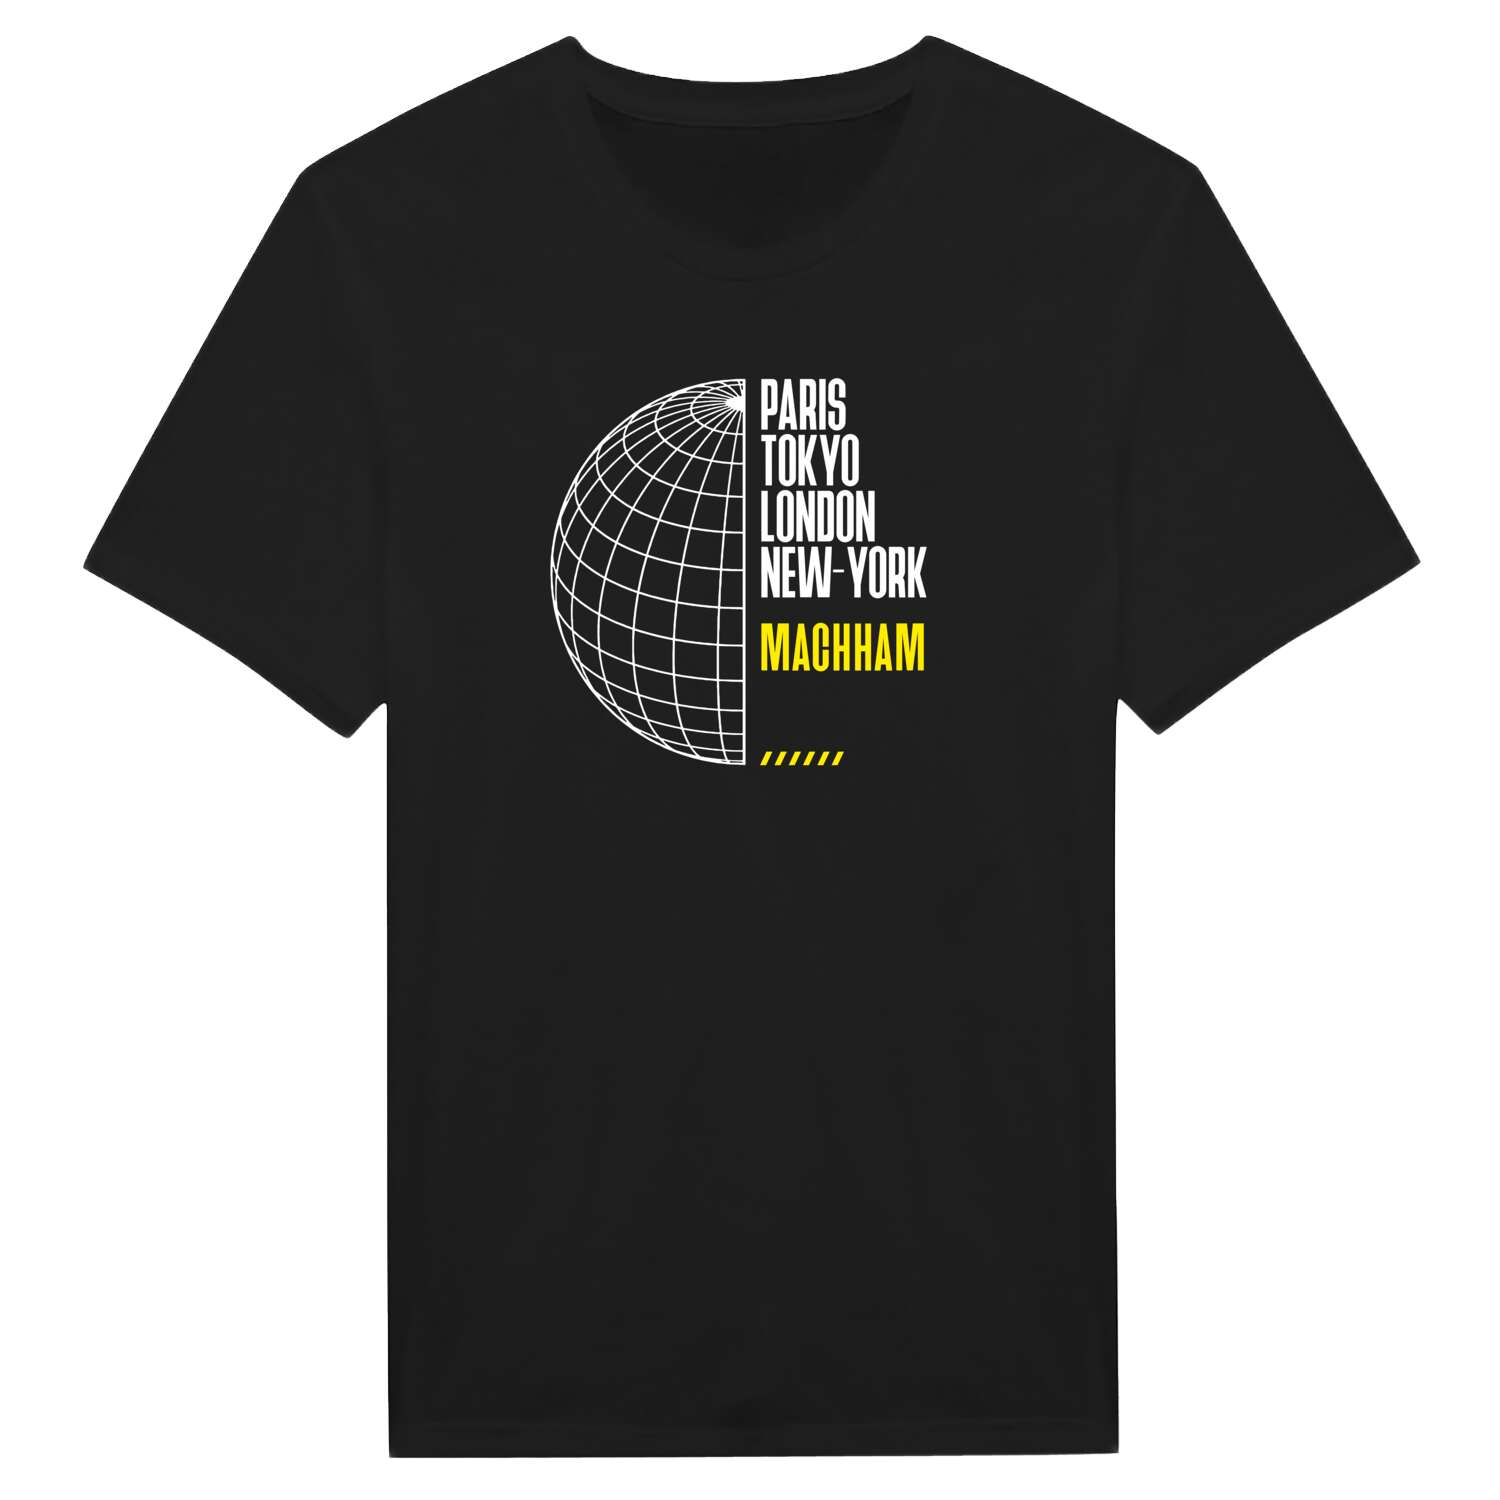 Machham T-Shirt »Paris Tokyo London«